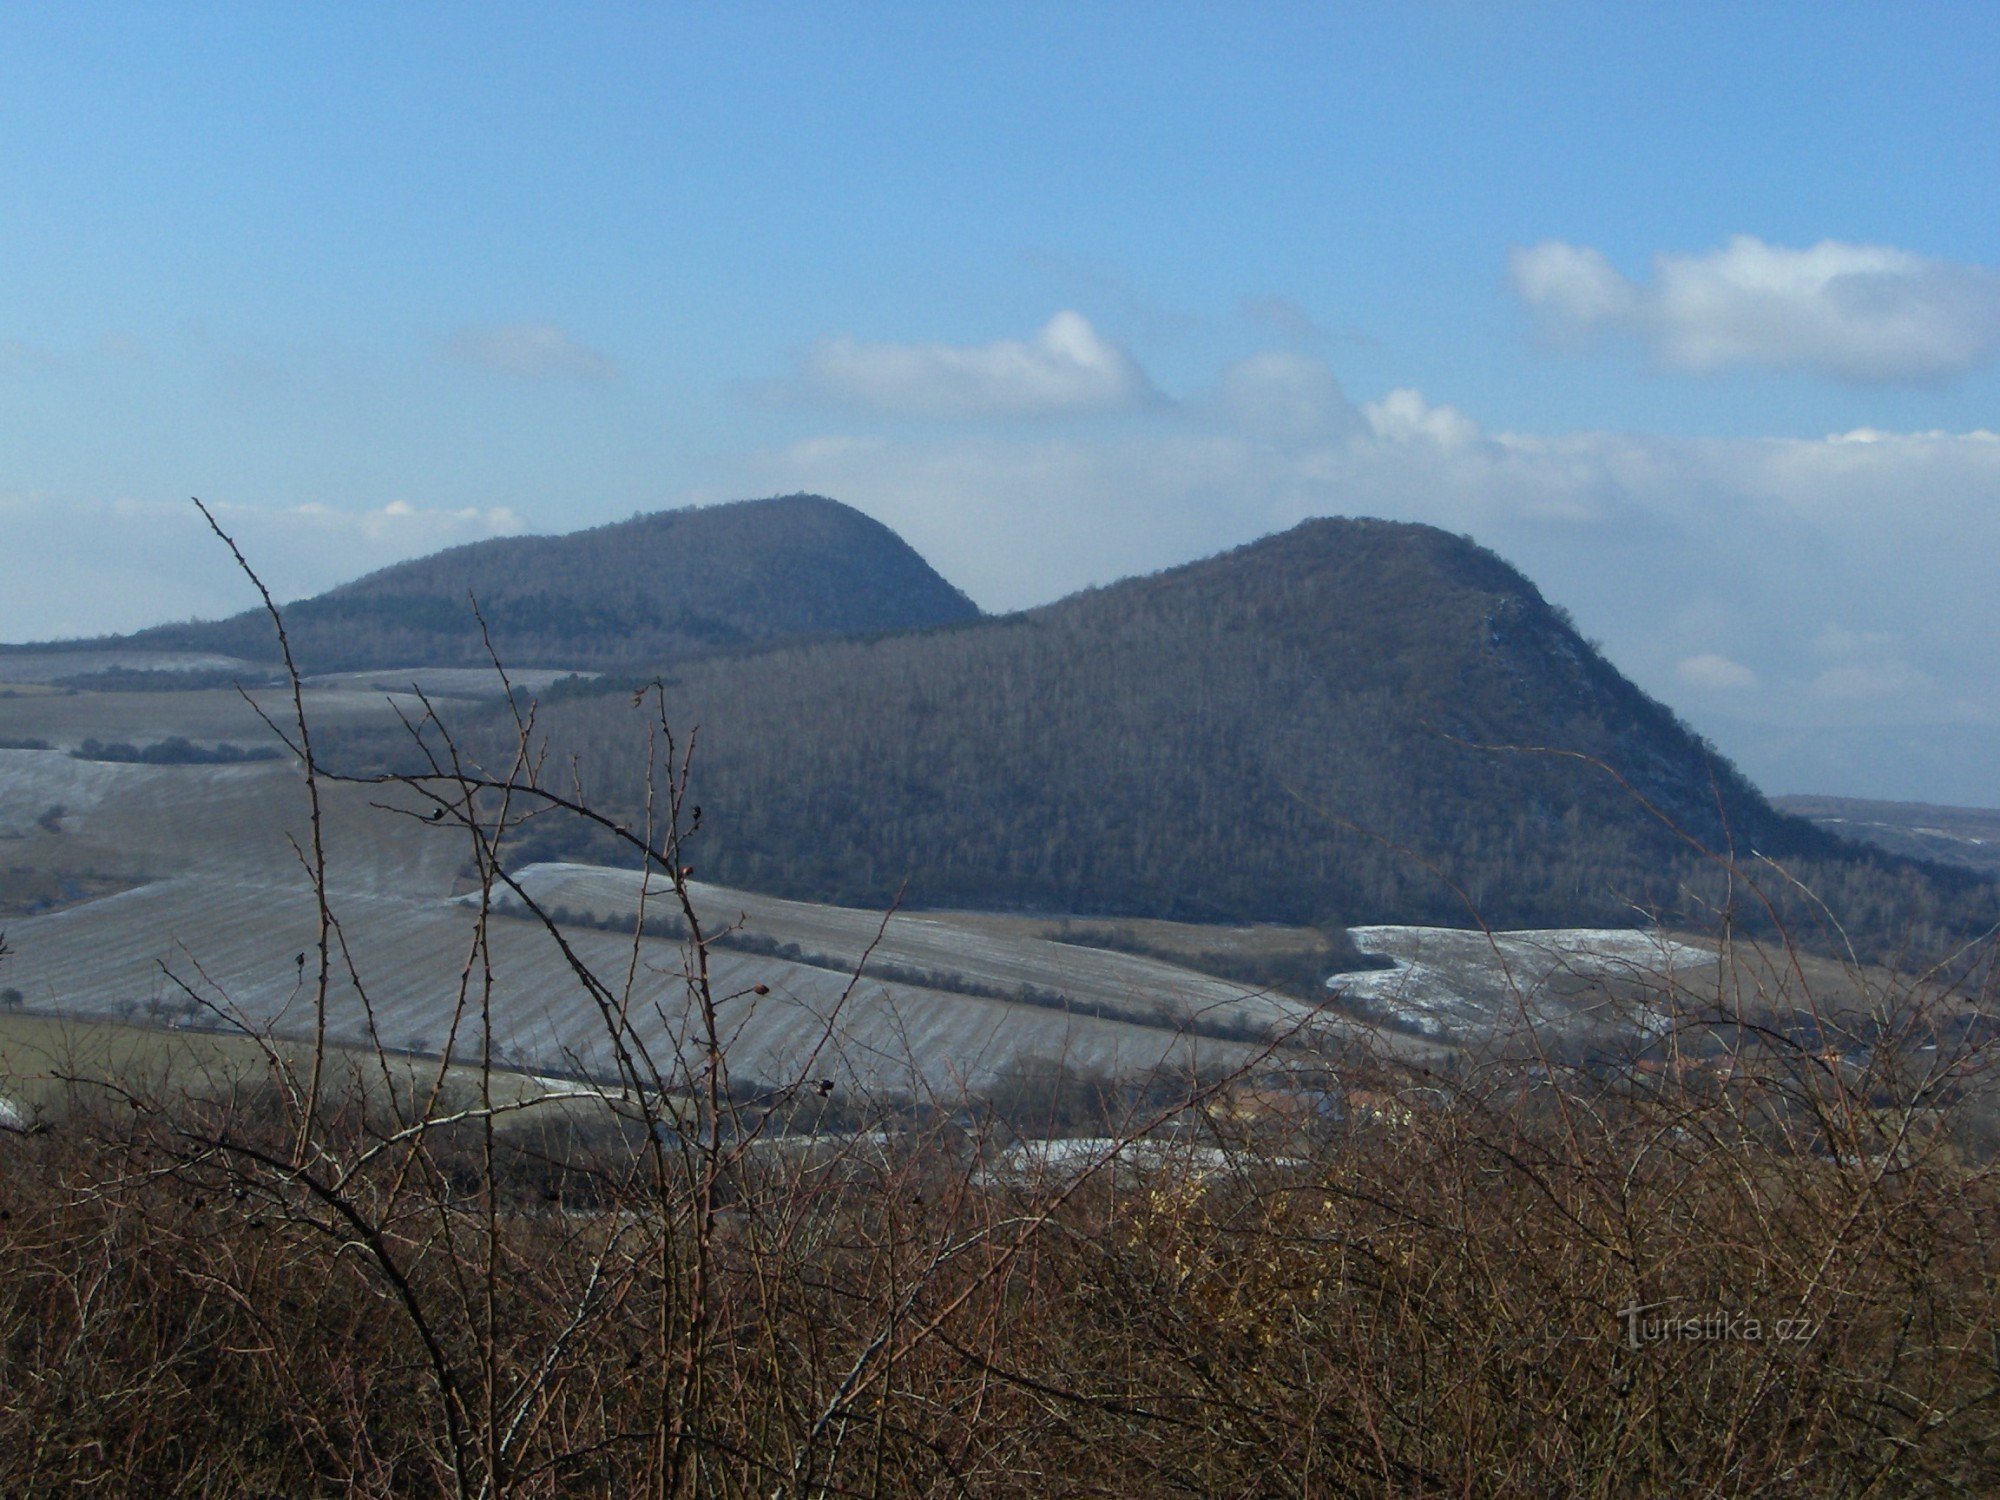 Želenický vrch, đằng sau đó là Zlatník